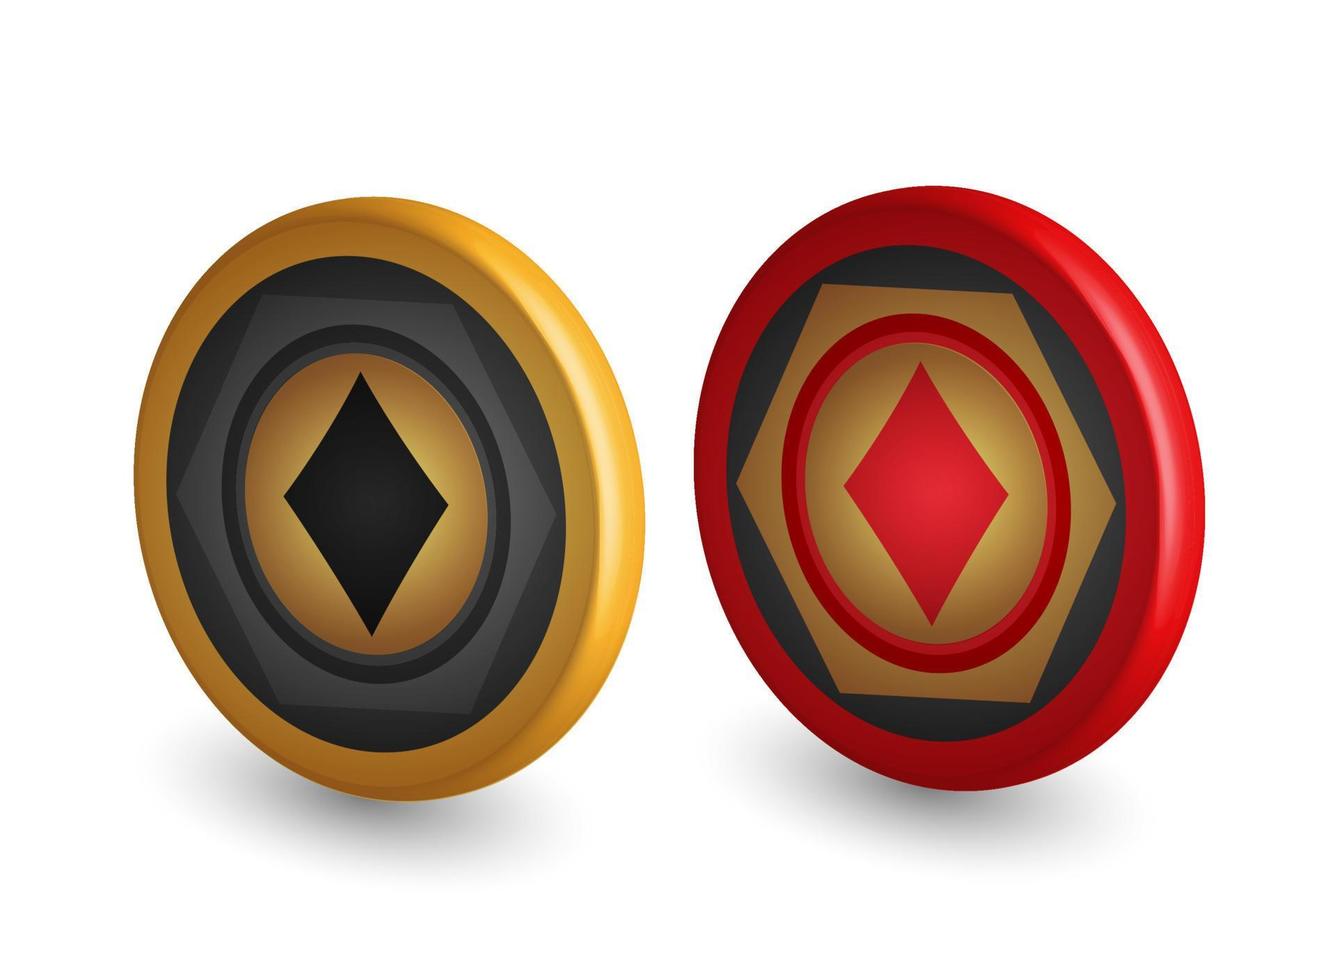 fichas de pôquer de ouro e vermelho, com símbolo de diamante, elementos de design de jogos, ilustração vetorial 3d, vetor